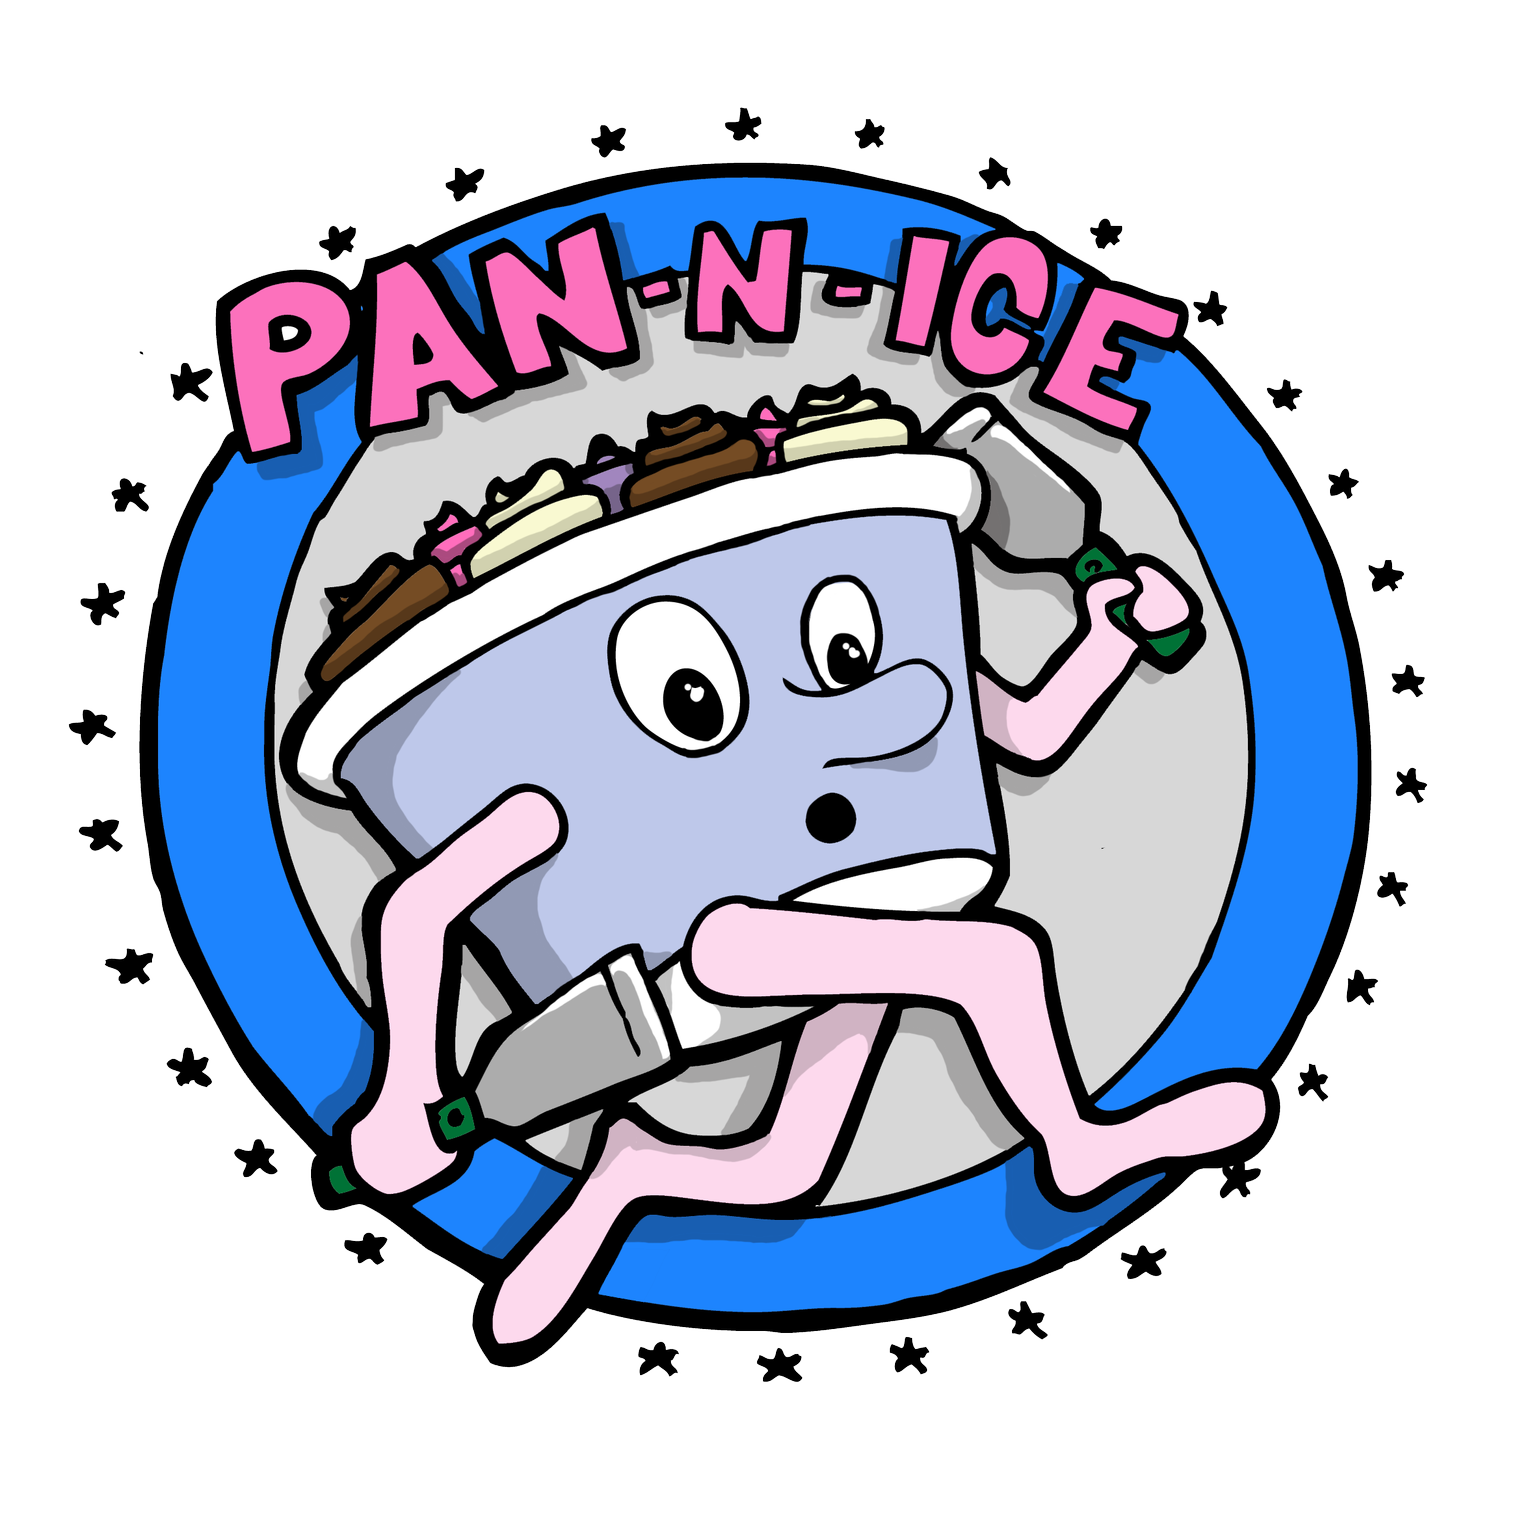 Pan - n - Ice